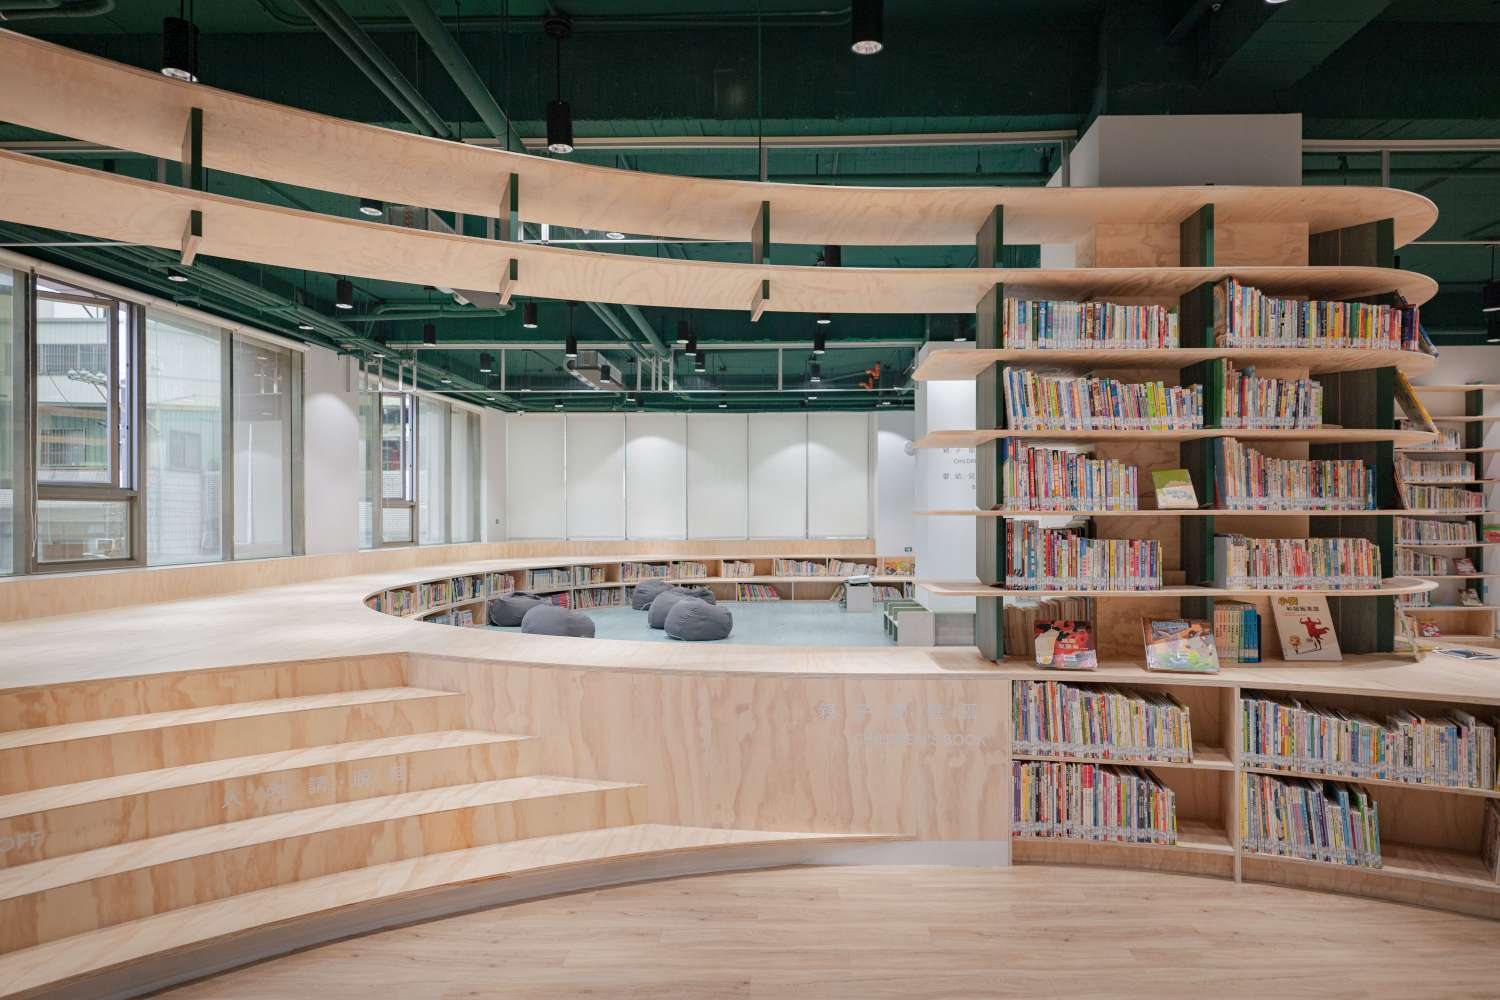 龍山圖書分館是竹市第七座、同時也是最大圖書館，以森林、田野作設計概念，打造有如樹冠的書架與梯田狀親子閱讀區，成都市中的森林系書房。